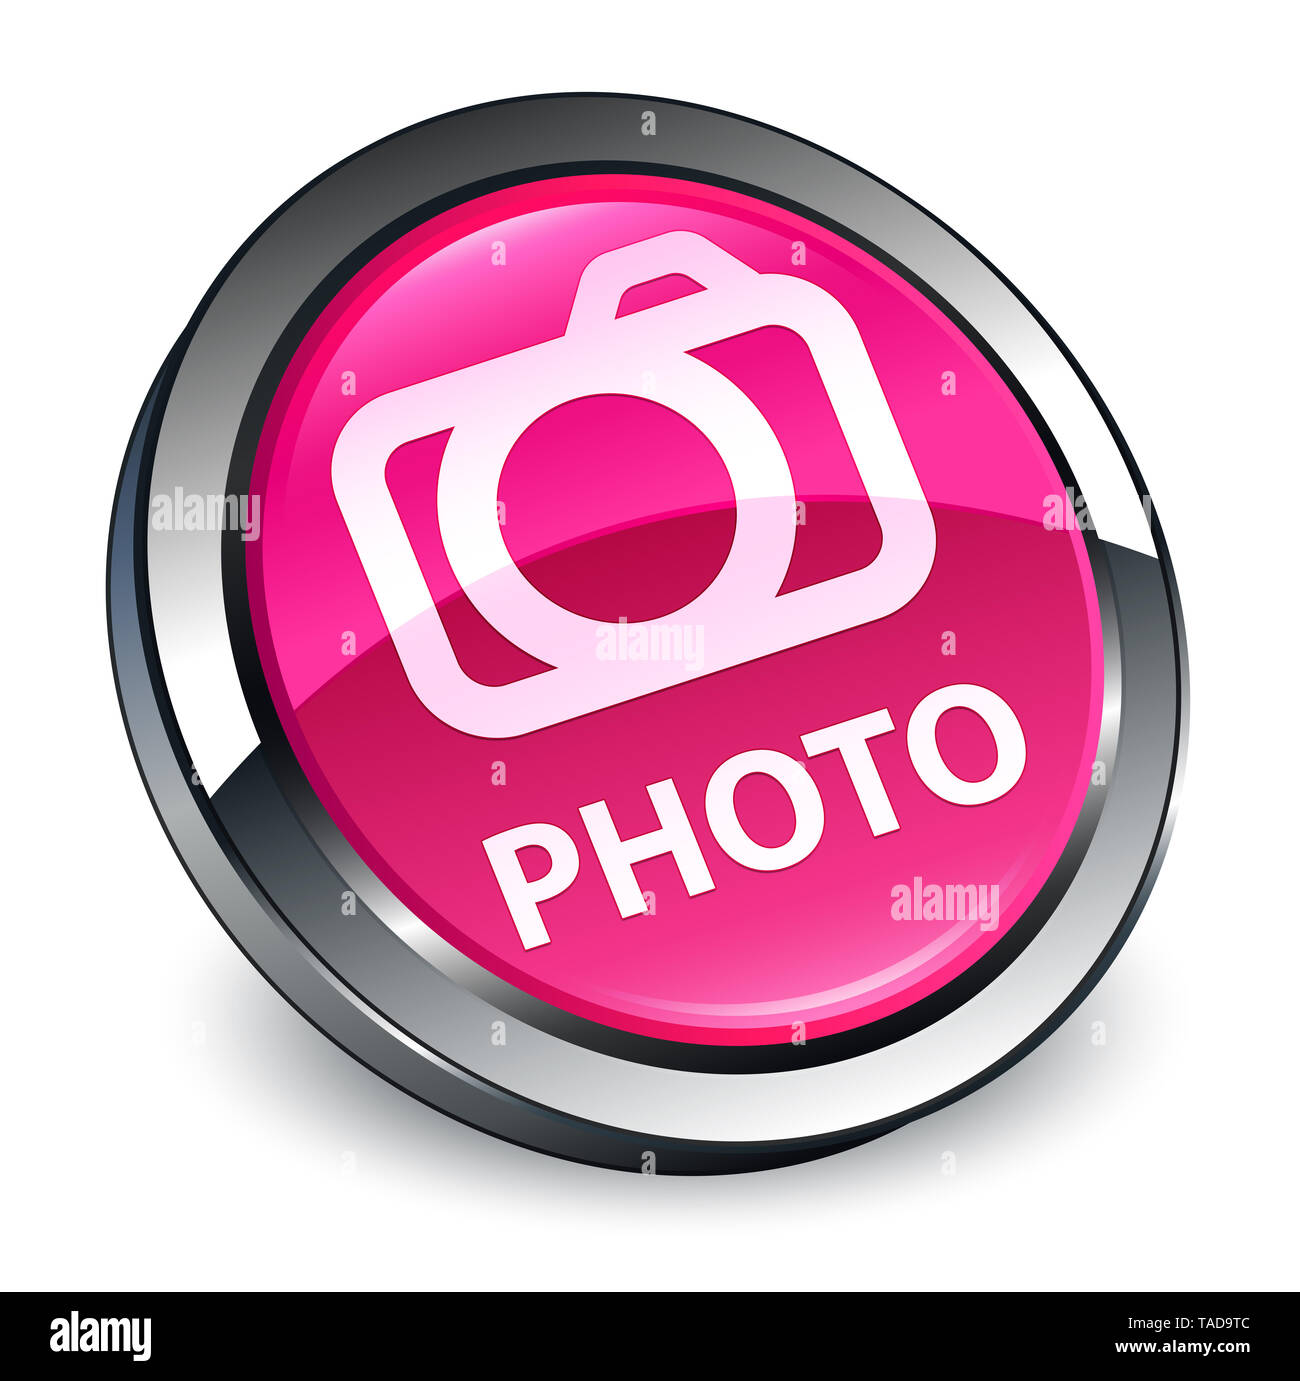 Foto (icona della fotocamera) isolati su 3d rosa pulsante rotondo illustrazione astratta Foto Stock